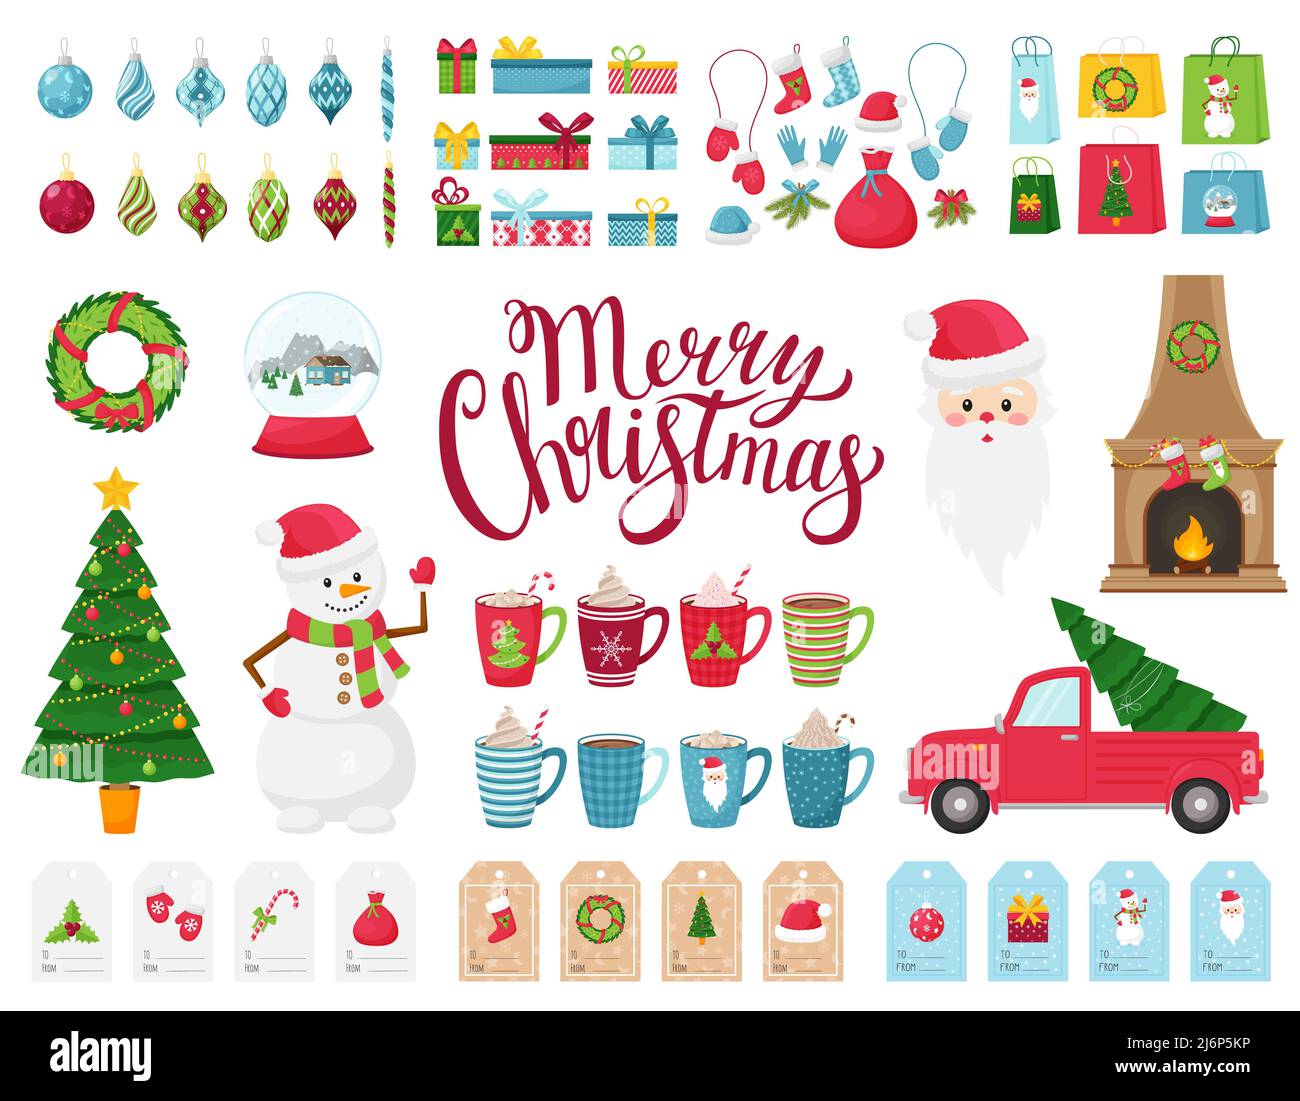 Un ampio set di elementi di design sul tema dell'inverno e del Natale. Una collezione di decorazioni in stile piatto. Personaggi cartoni animati, albero di Natale, regali Illustrazione Vettoriale